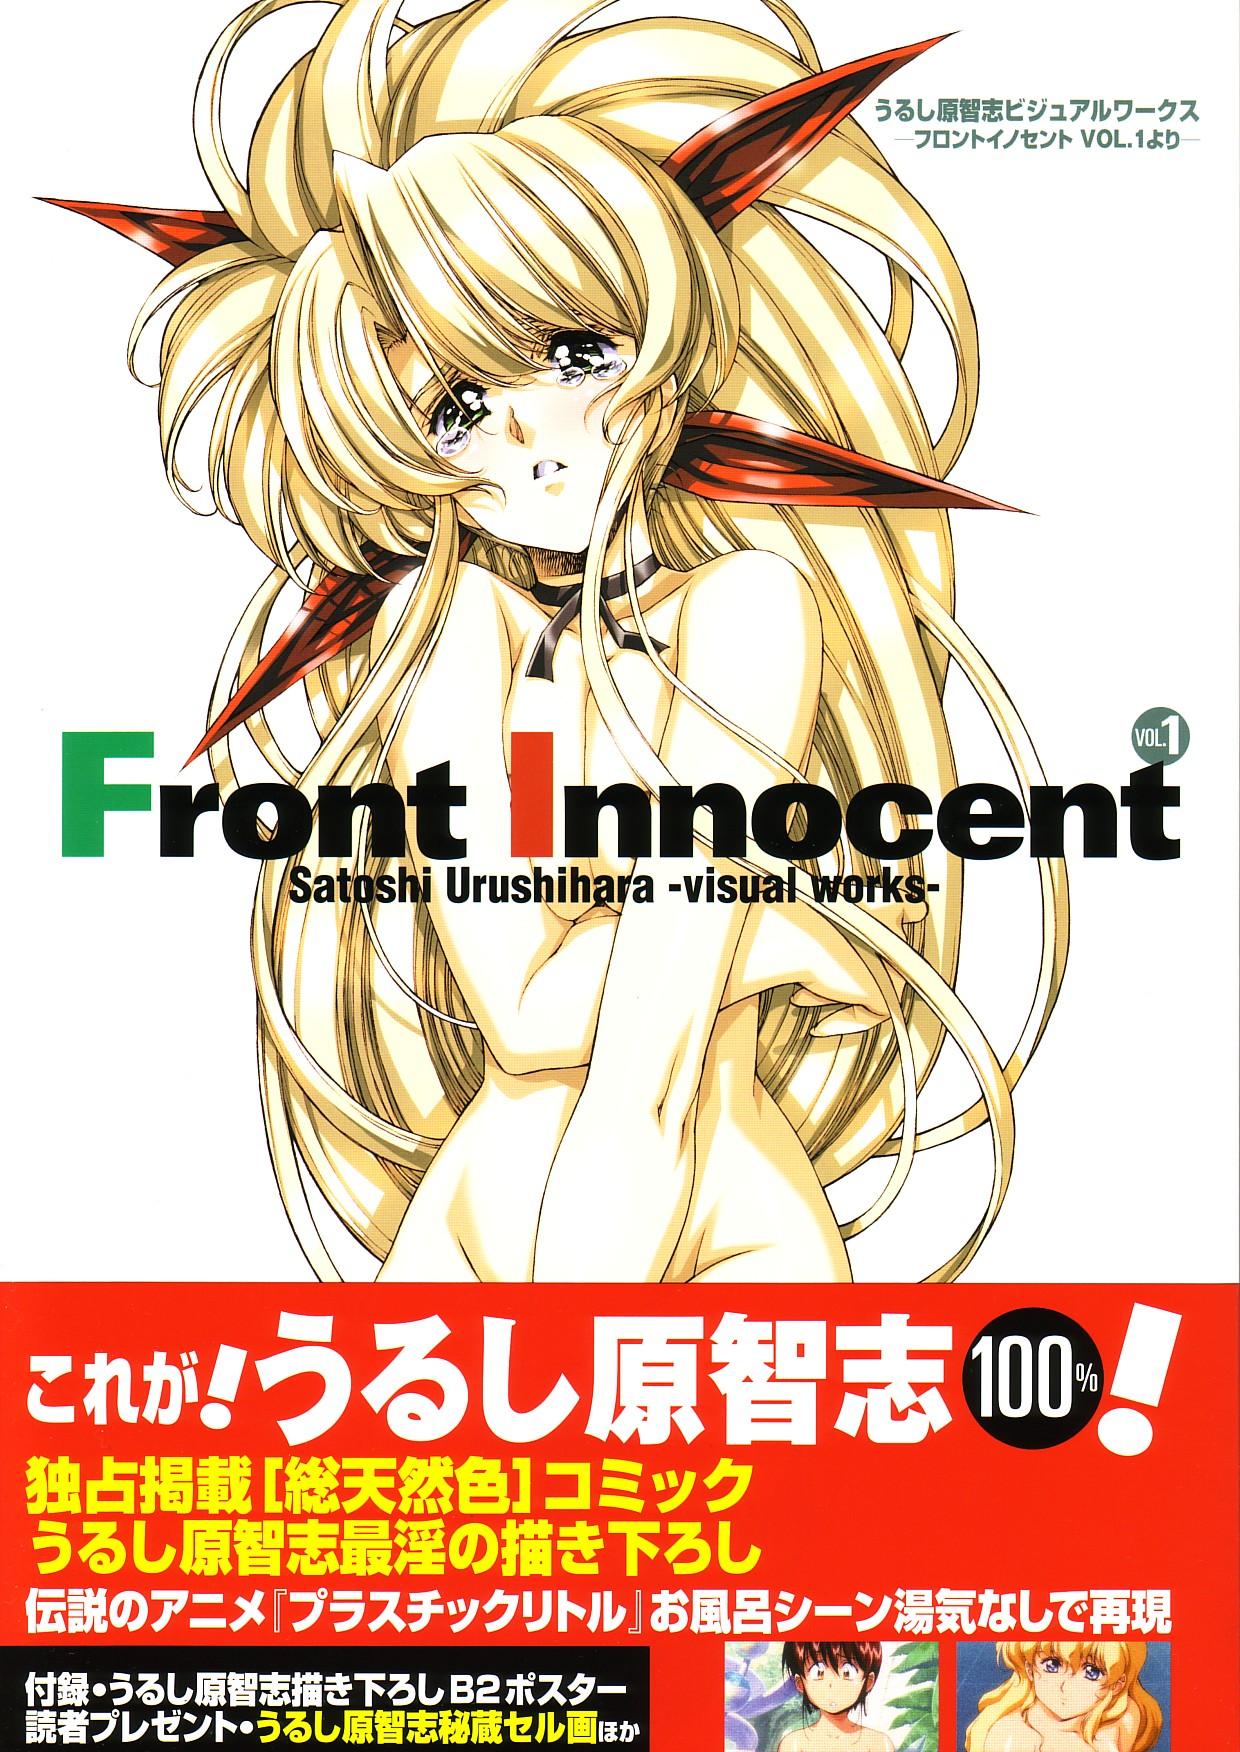 Front Innocent #1: Satoshi Urushihara Visual Works 0